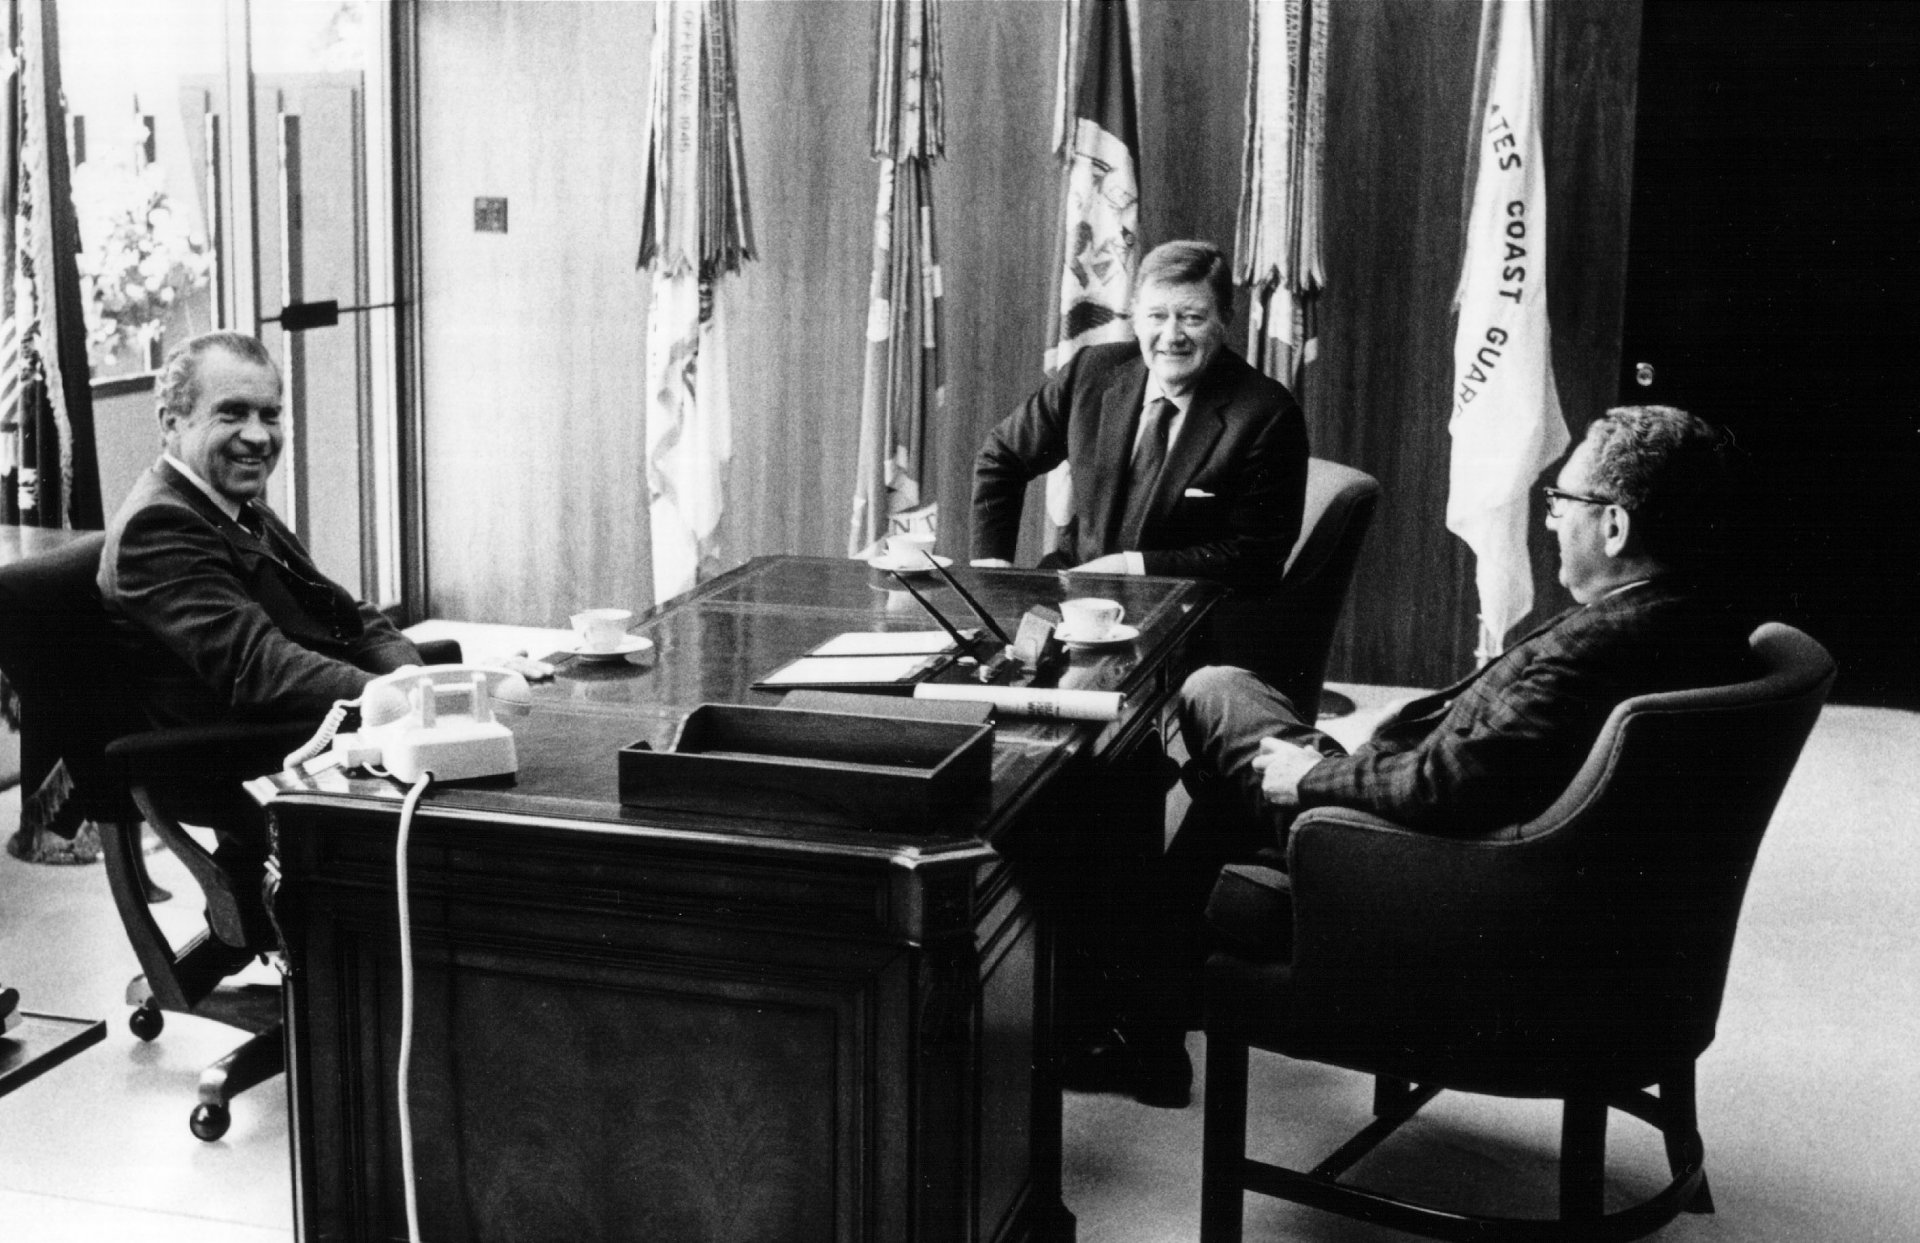 10 юли 1972 г. - Хенри Кисинджър и президентът Ричард Никсън разговарят с Марион Уейн, известен още като Джон Уейн - уестърн звездата на американското кино